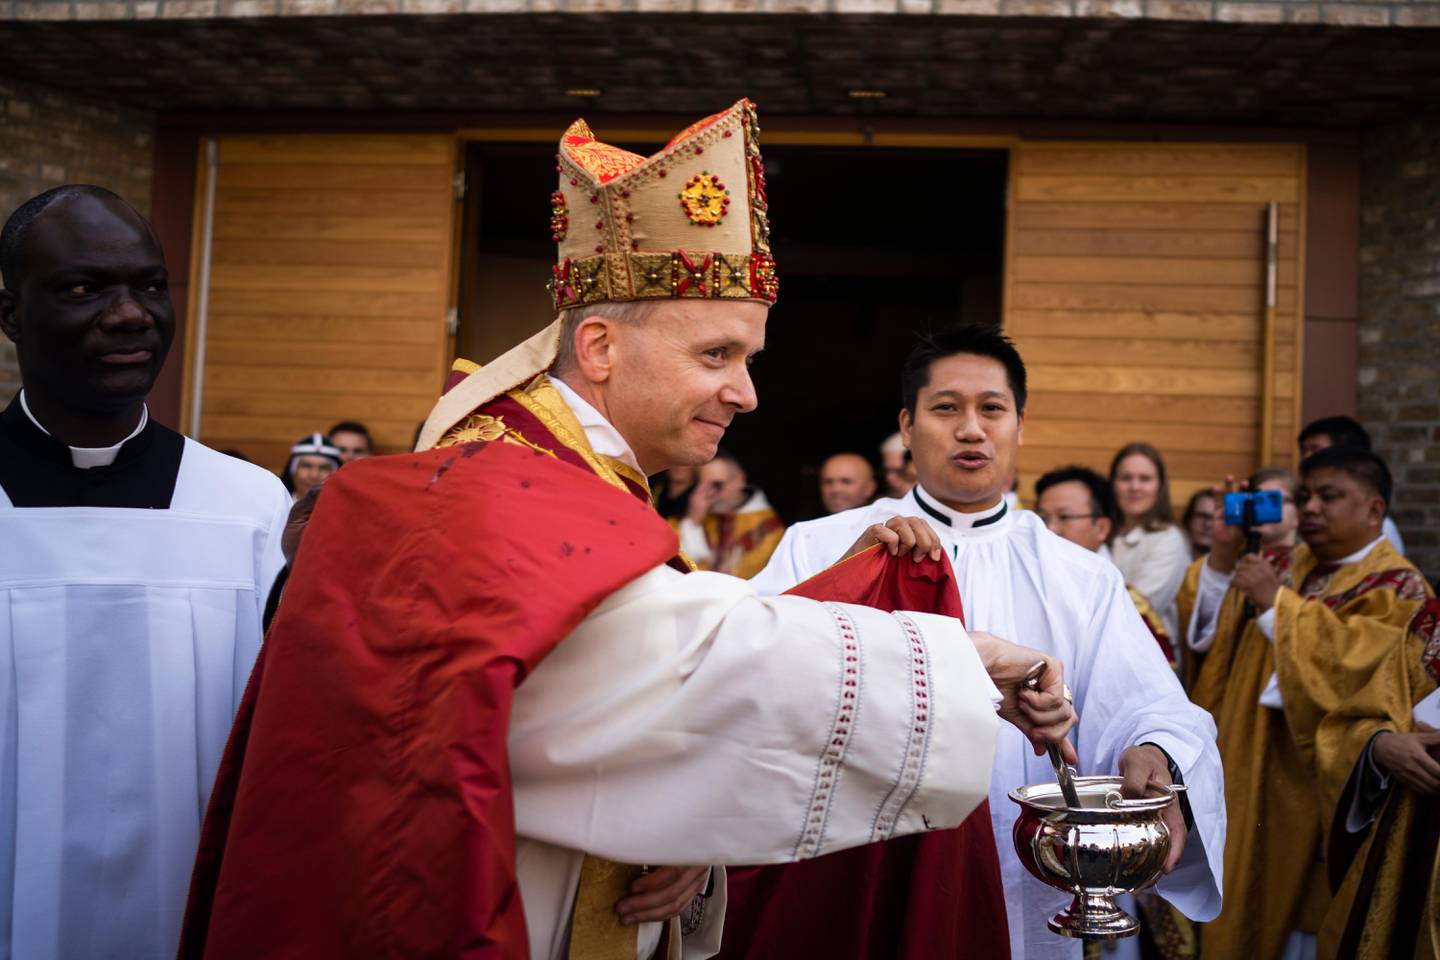 Etter mottagelsen i St. Olav domkirke kastet biskop Erik Varden vievann på de mange fremmøtte fra menigheten.